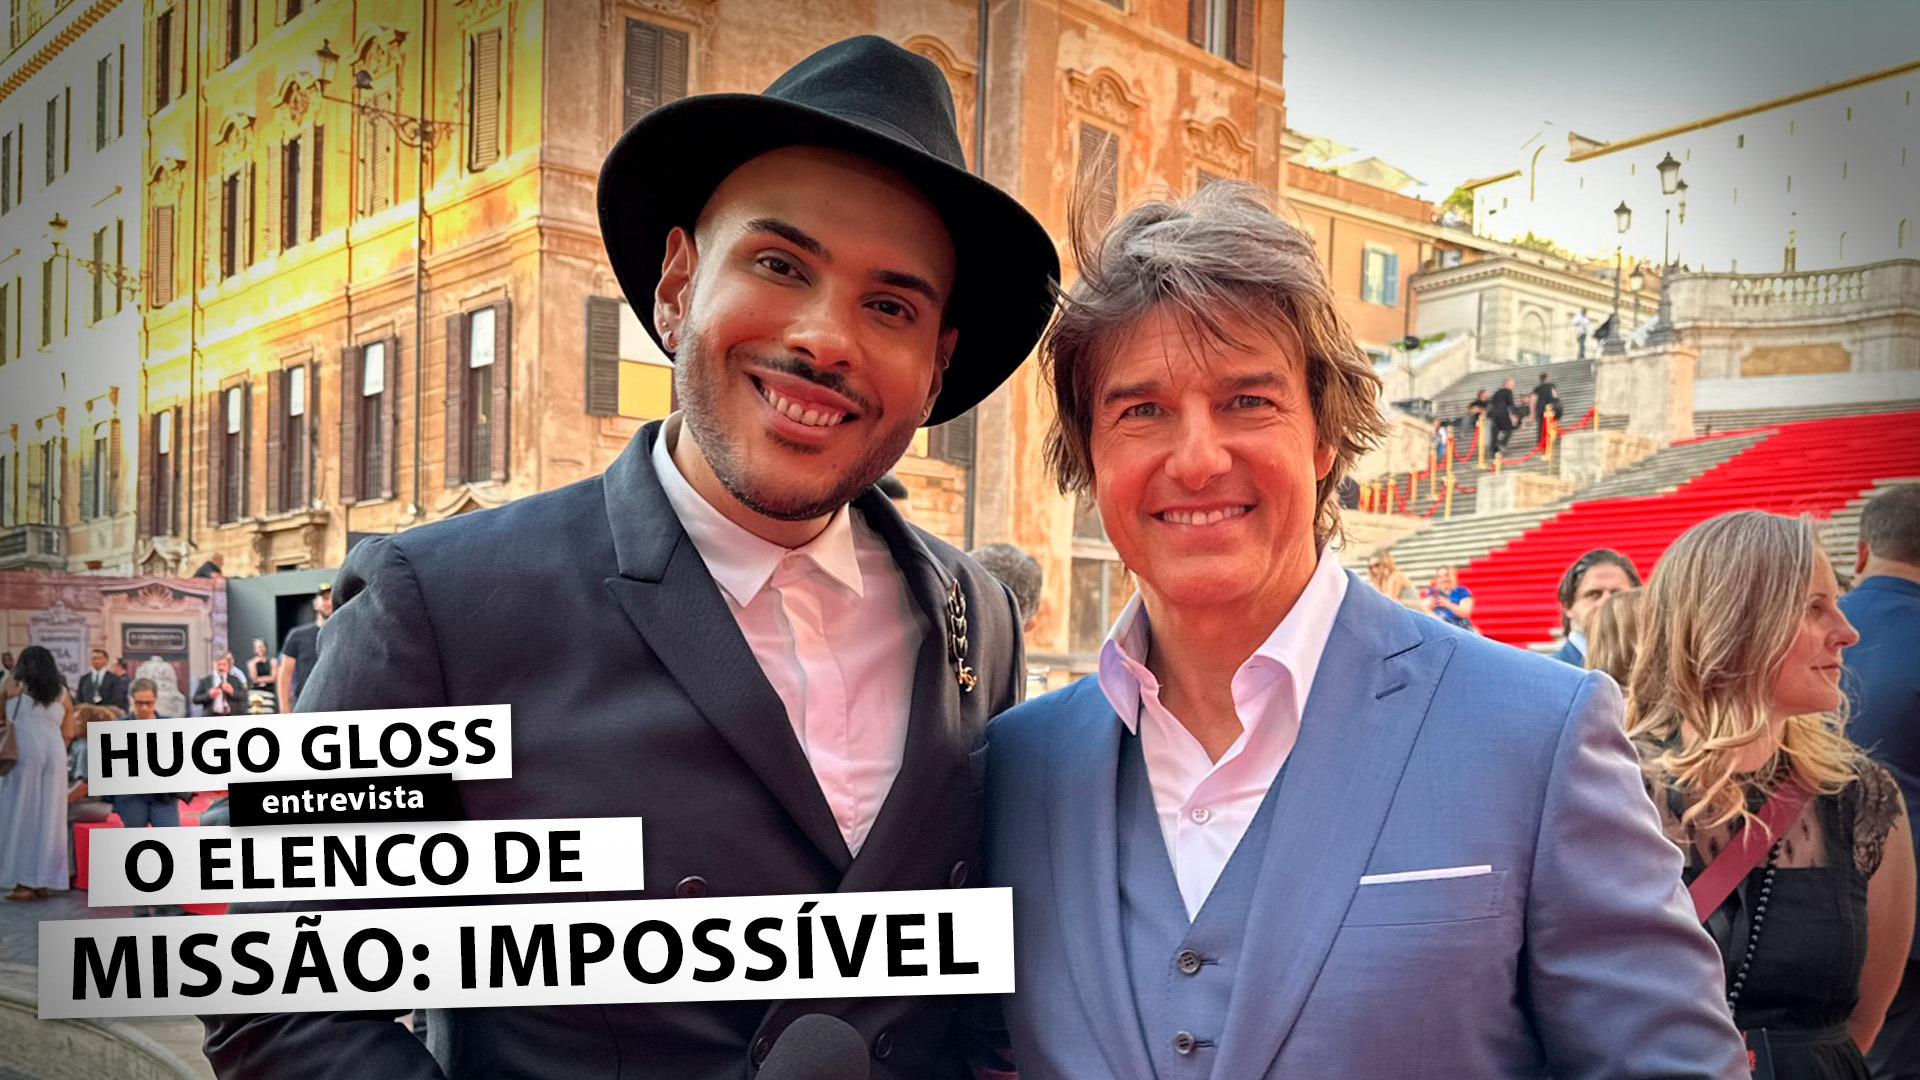 Exclusivo: Tom Cruise e elenco falam sobre “Missão: Impossível 7” e possível filme da franquia no Brasil; assista!